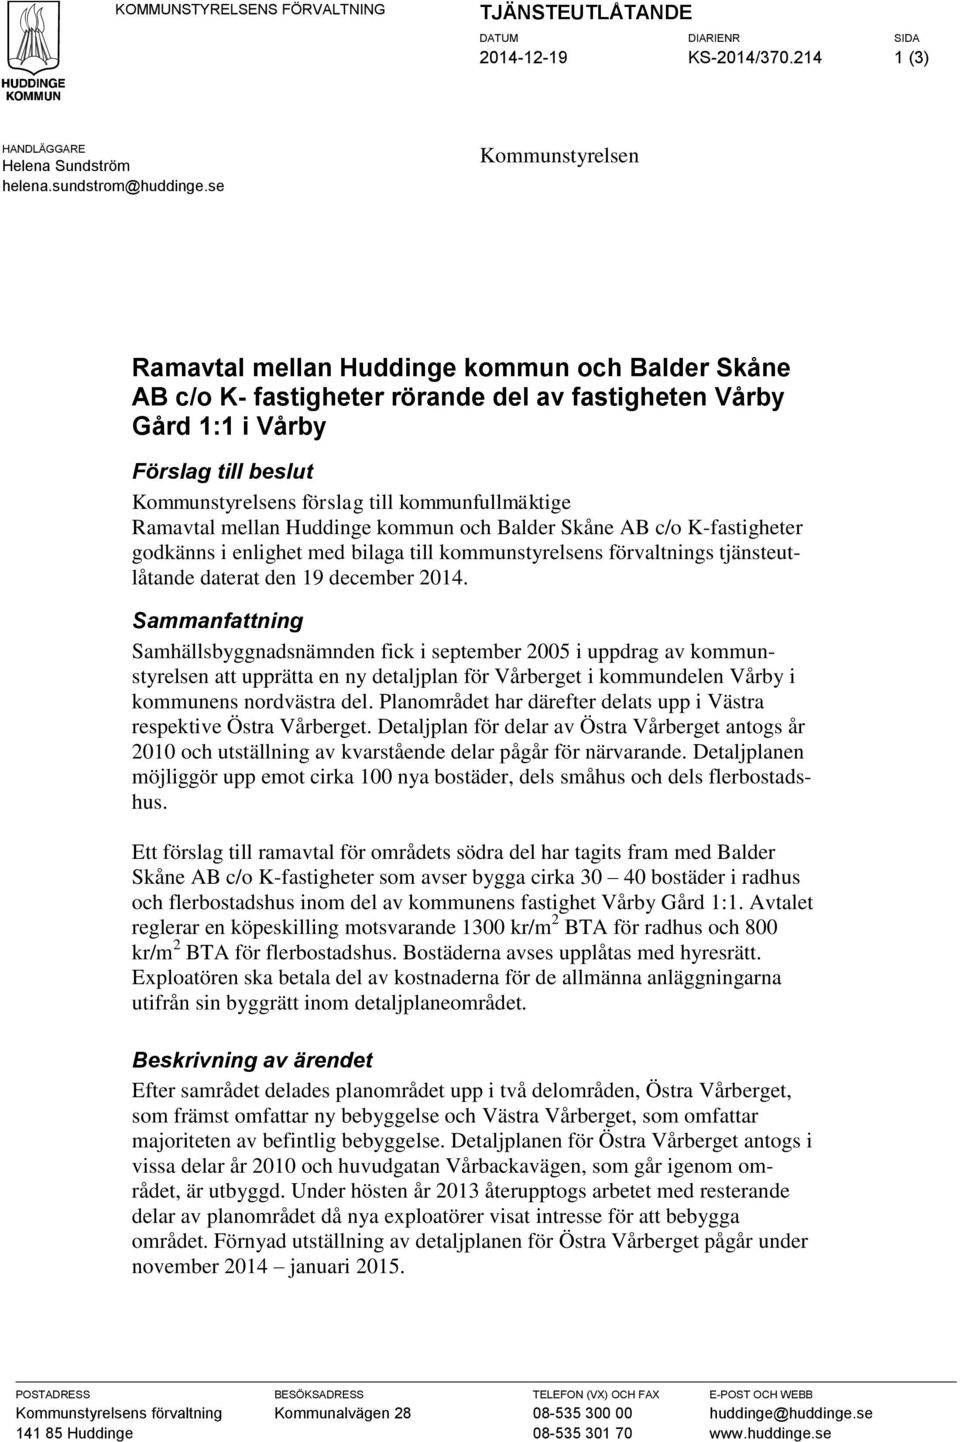 kommunfullmäktige Ramavtal mellan Huddinge kommun och Balder Skåne AB c/o K-fastigheter godkänns i enlighet med bilaga till kommunstyrelsens förvaltnings tjänsteutlåtande daterat den 19 december 2014.